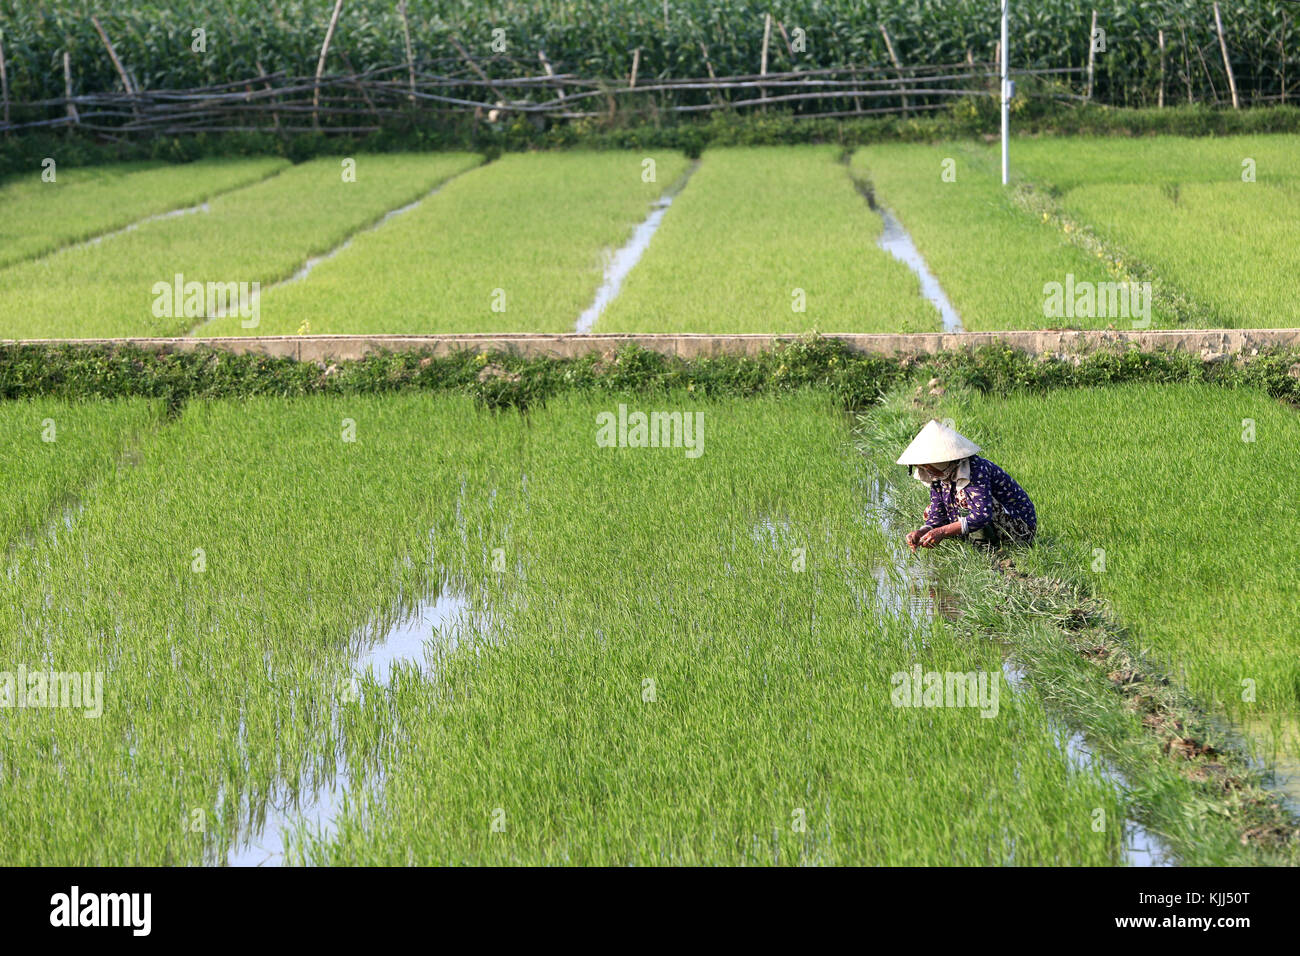 Agriculteur vietnamien travaillant dans son champ de riz. Le repiquage du riz les jeunes. Hoi An. Le Vietnam. Banque D'Images